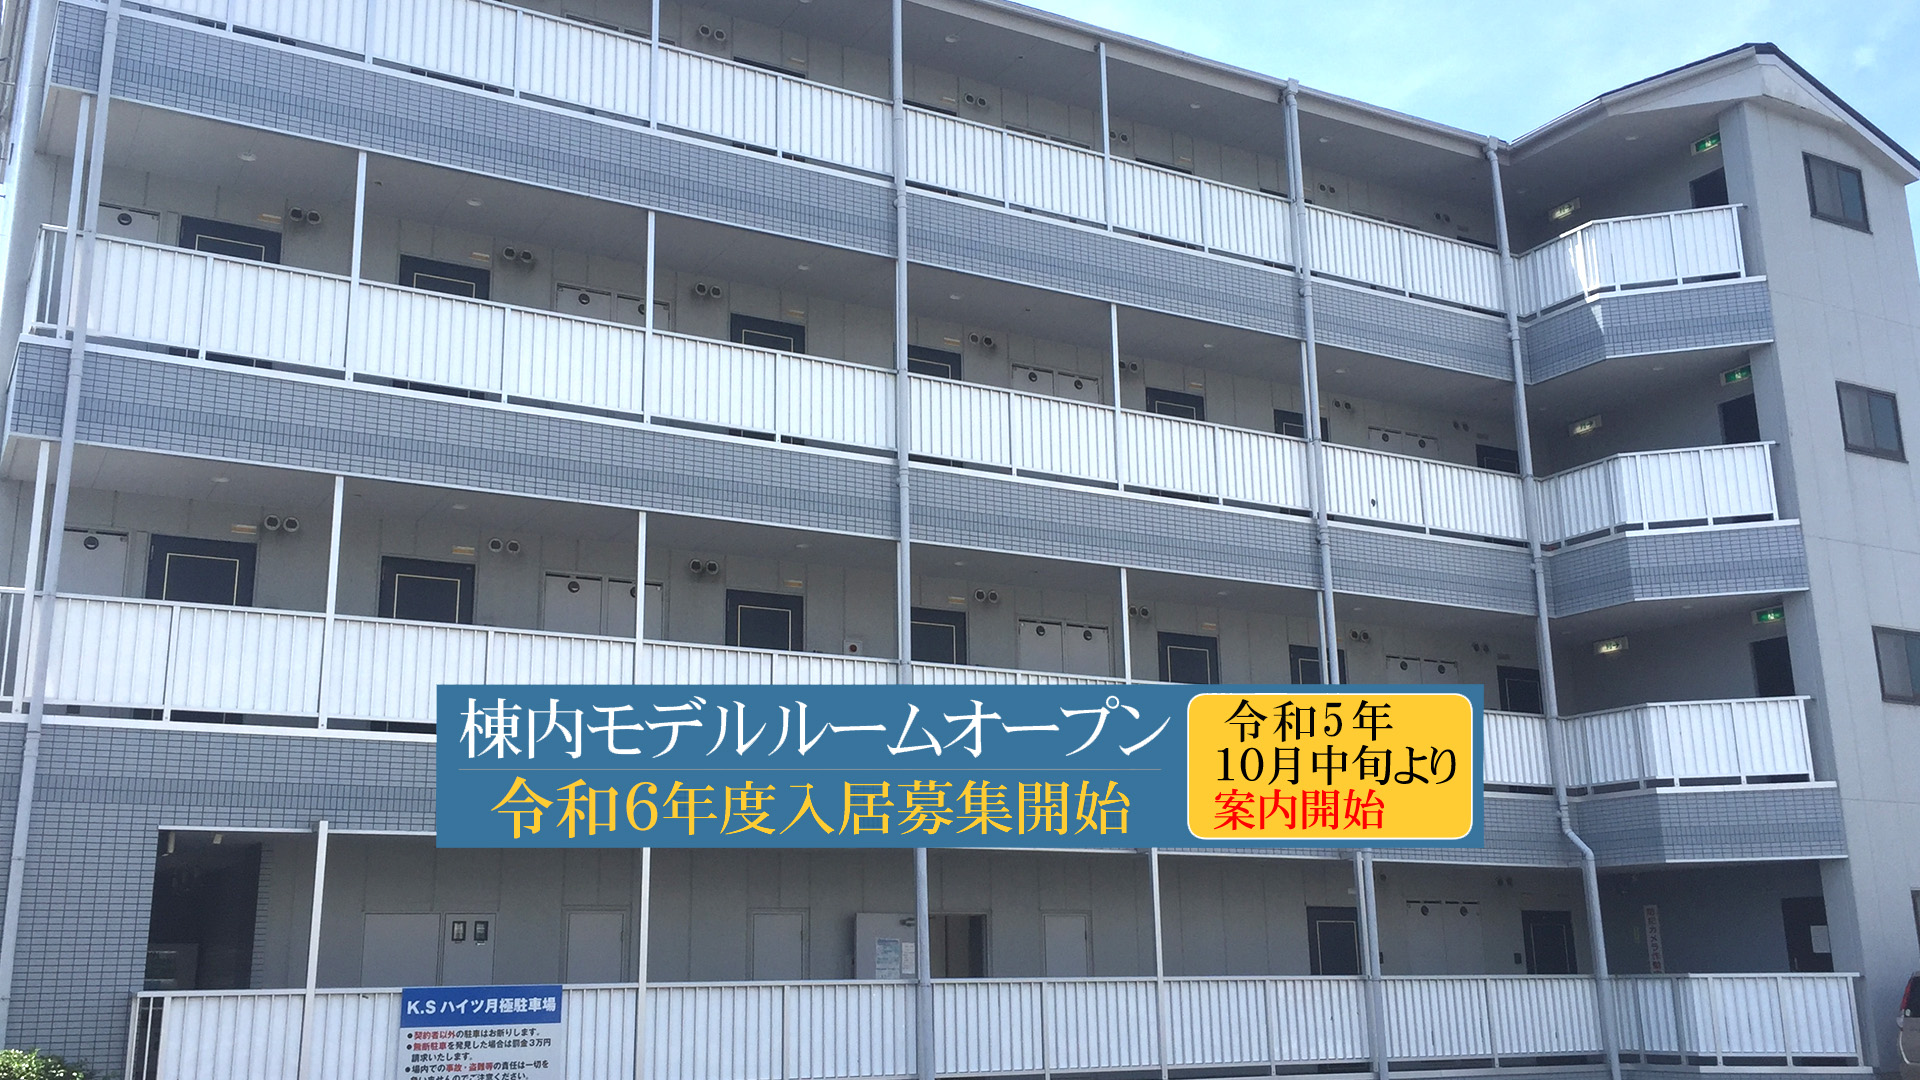 和泉中央駅徒歩10分・桃山大学徒歩10分の広めの公認（指定）学生ワンルームマンションはKSハイツ